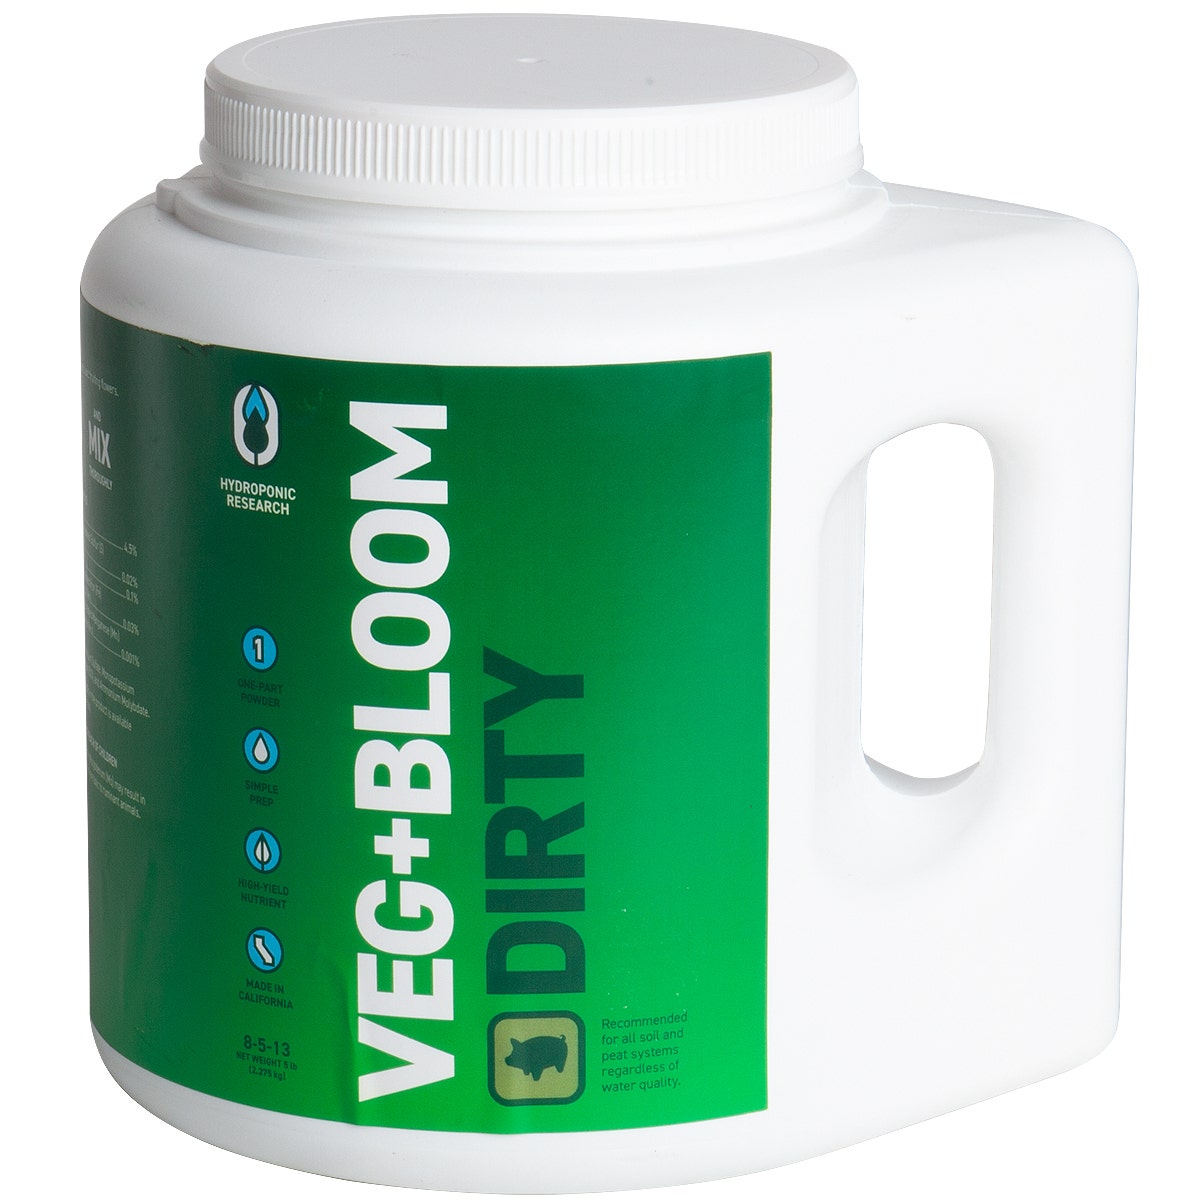 Veg+Bloom - Dirty Base